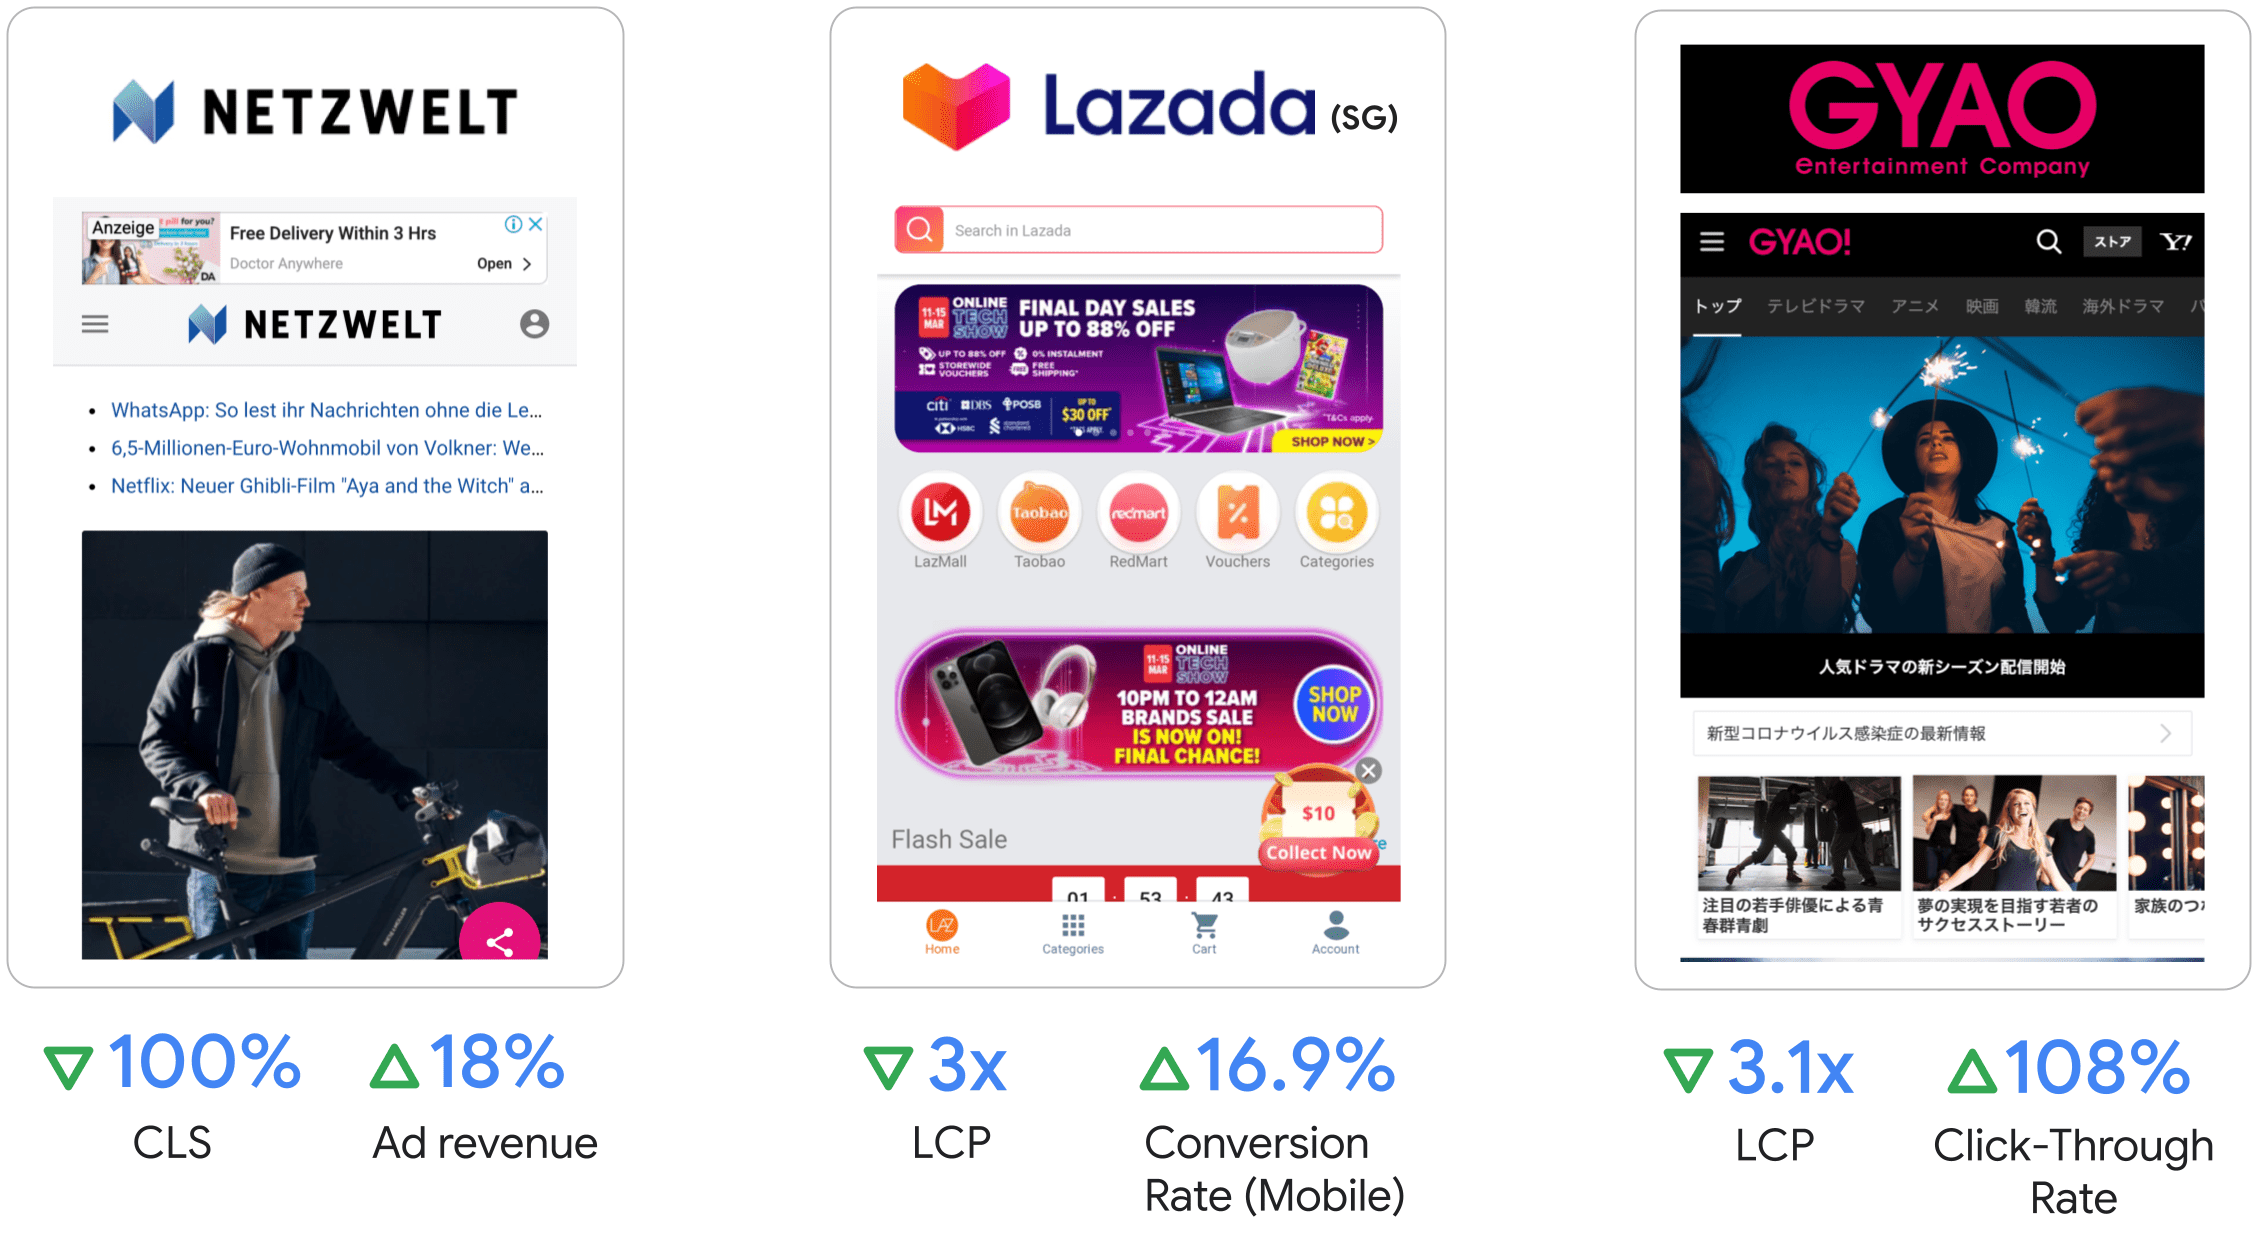 Netzwelt увеличил доход от рекламы на 18 процентов, Lazada увеличила LCP в 3 раза и коэффициент конверсии на мобильных устройствах увеличился на 16,9 процента, GYAO увеличила LCP в 3,1 раза и повысила рейтинг кликов на 108 процентов